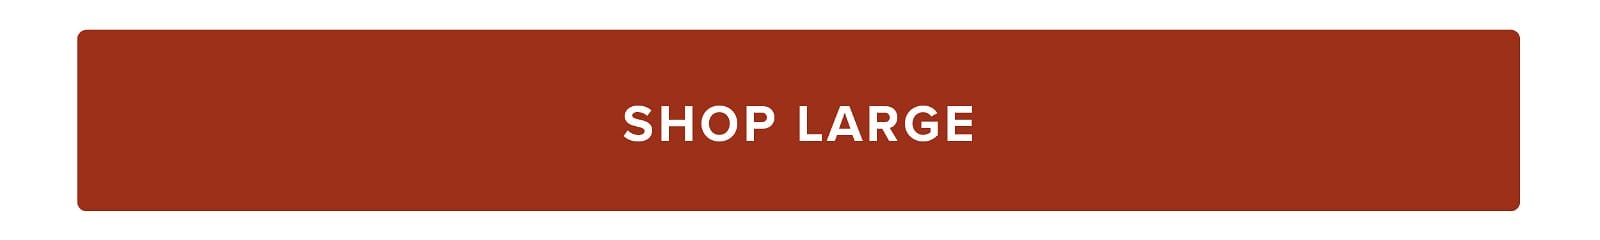 Shop Large